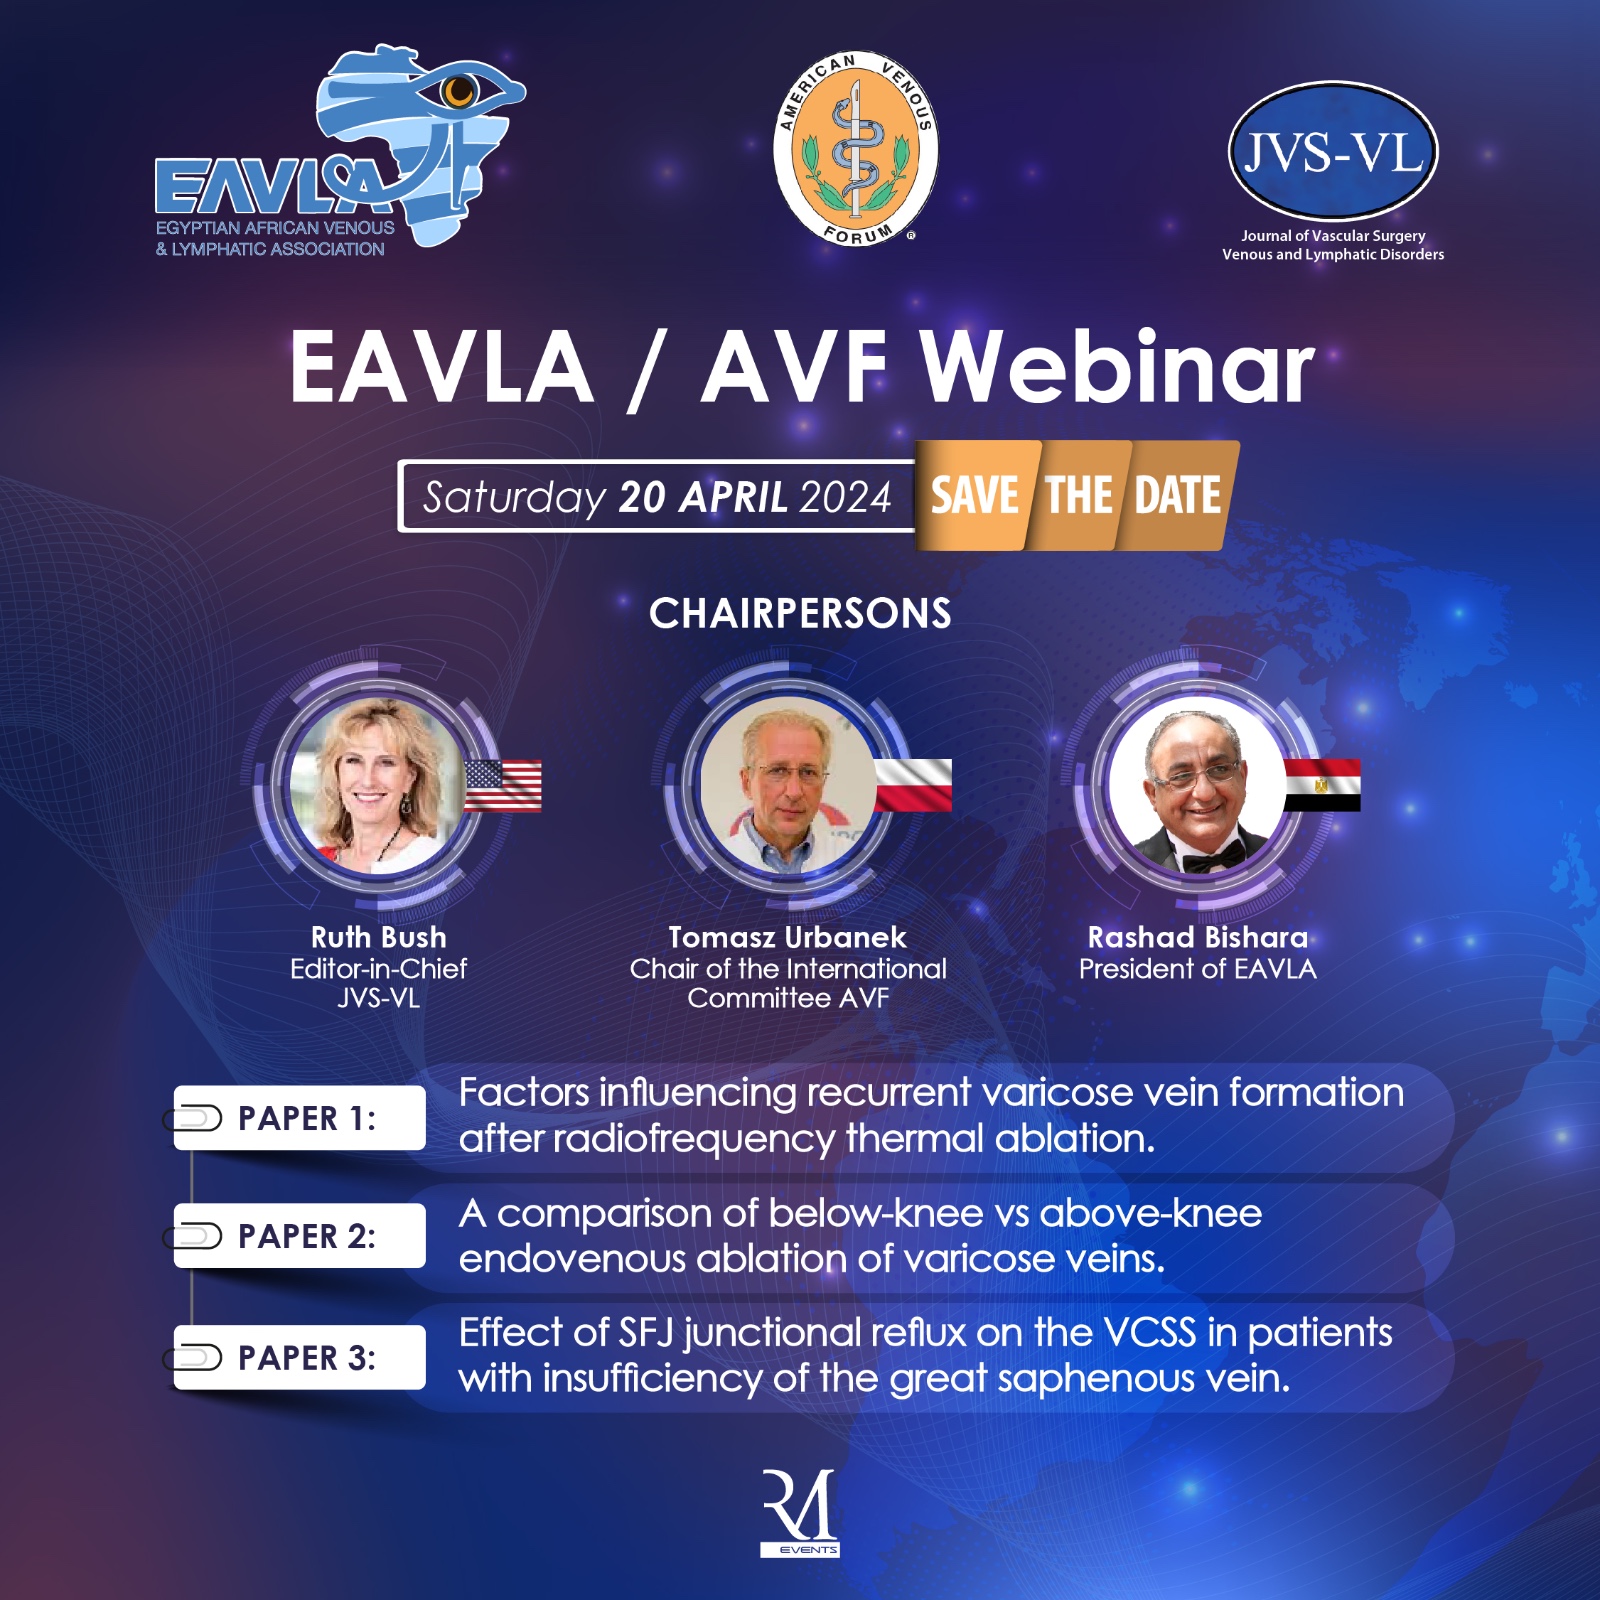 EAVLA/AVF Webinar